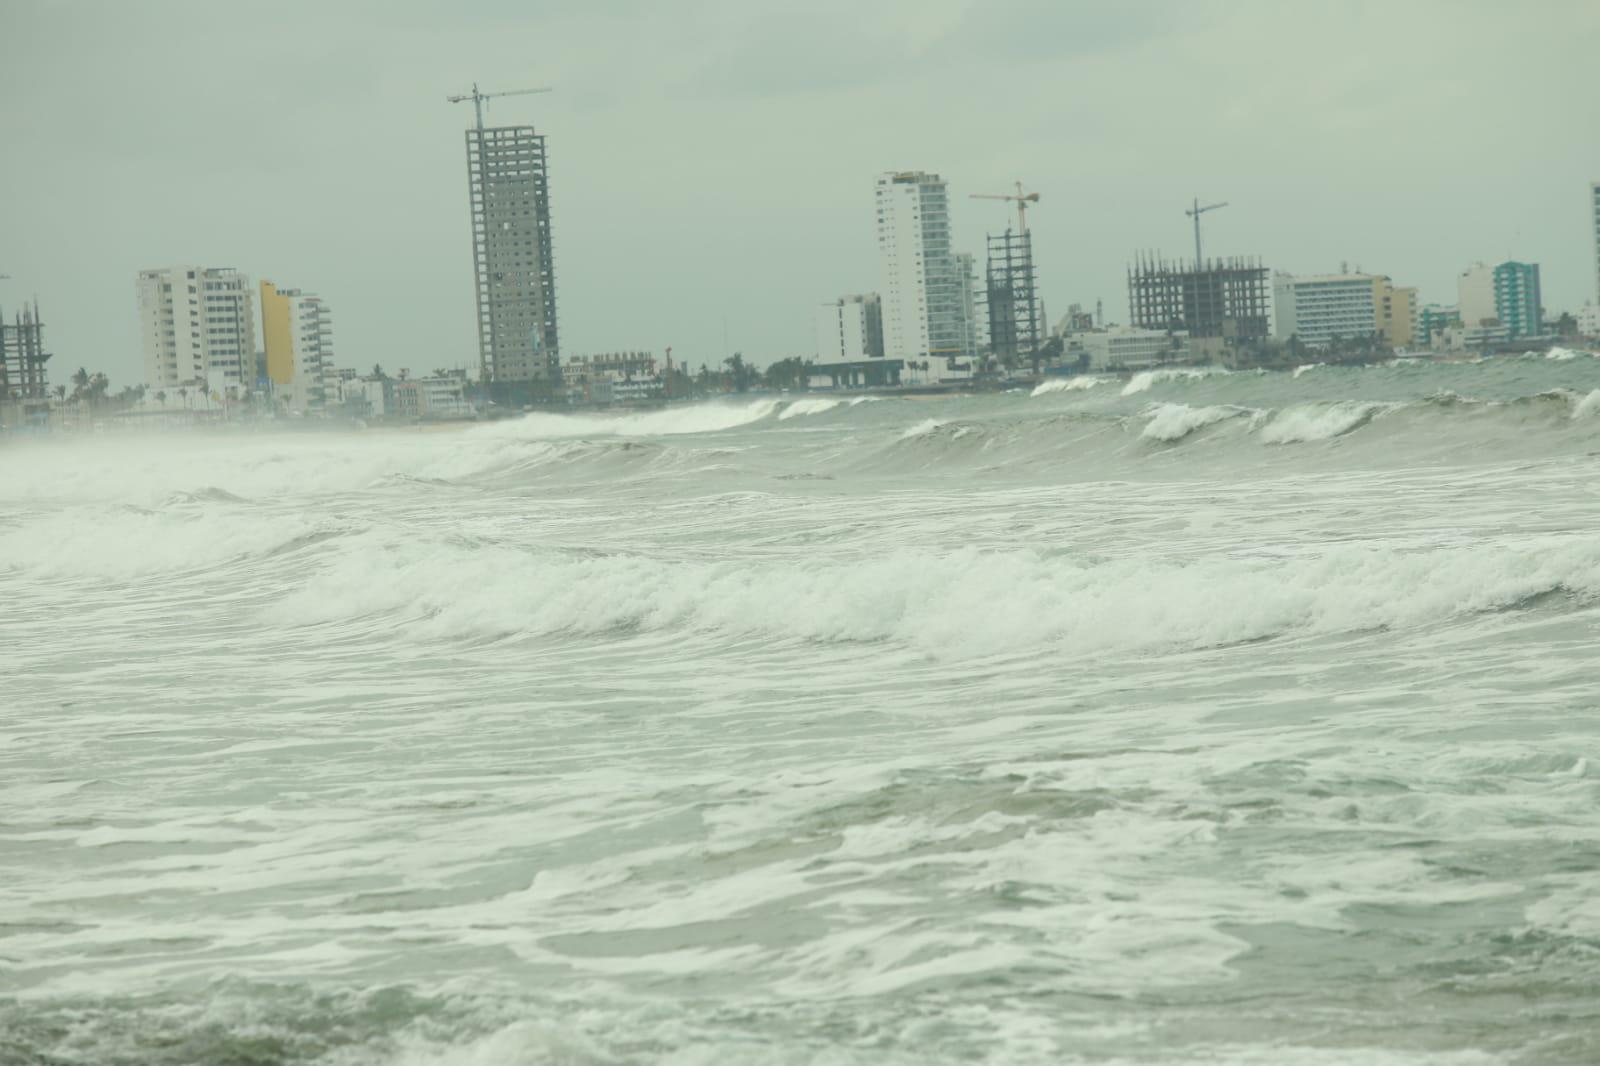 $!Mar de fondo y marea alta afectan de nuevo en Mazatlán